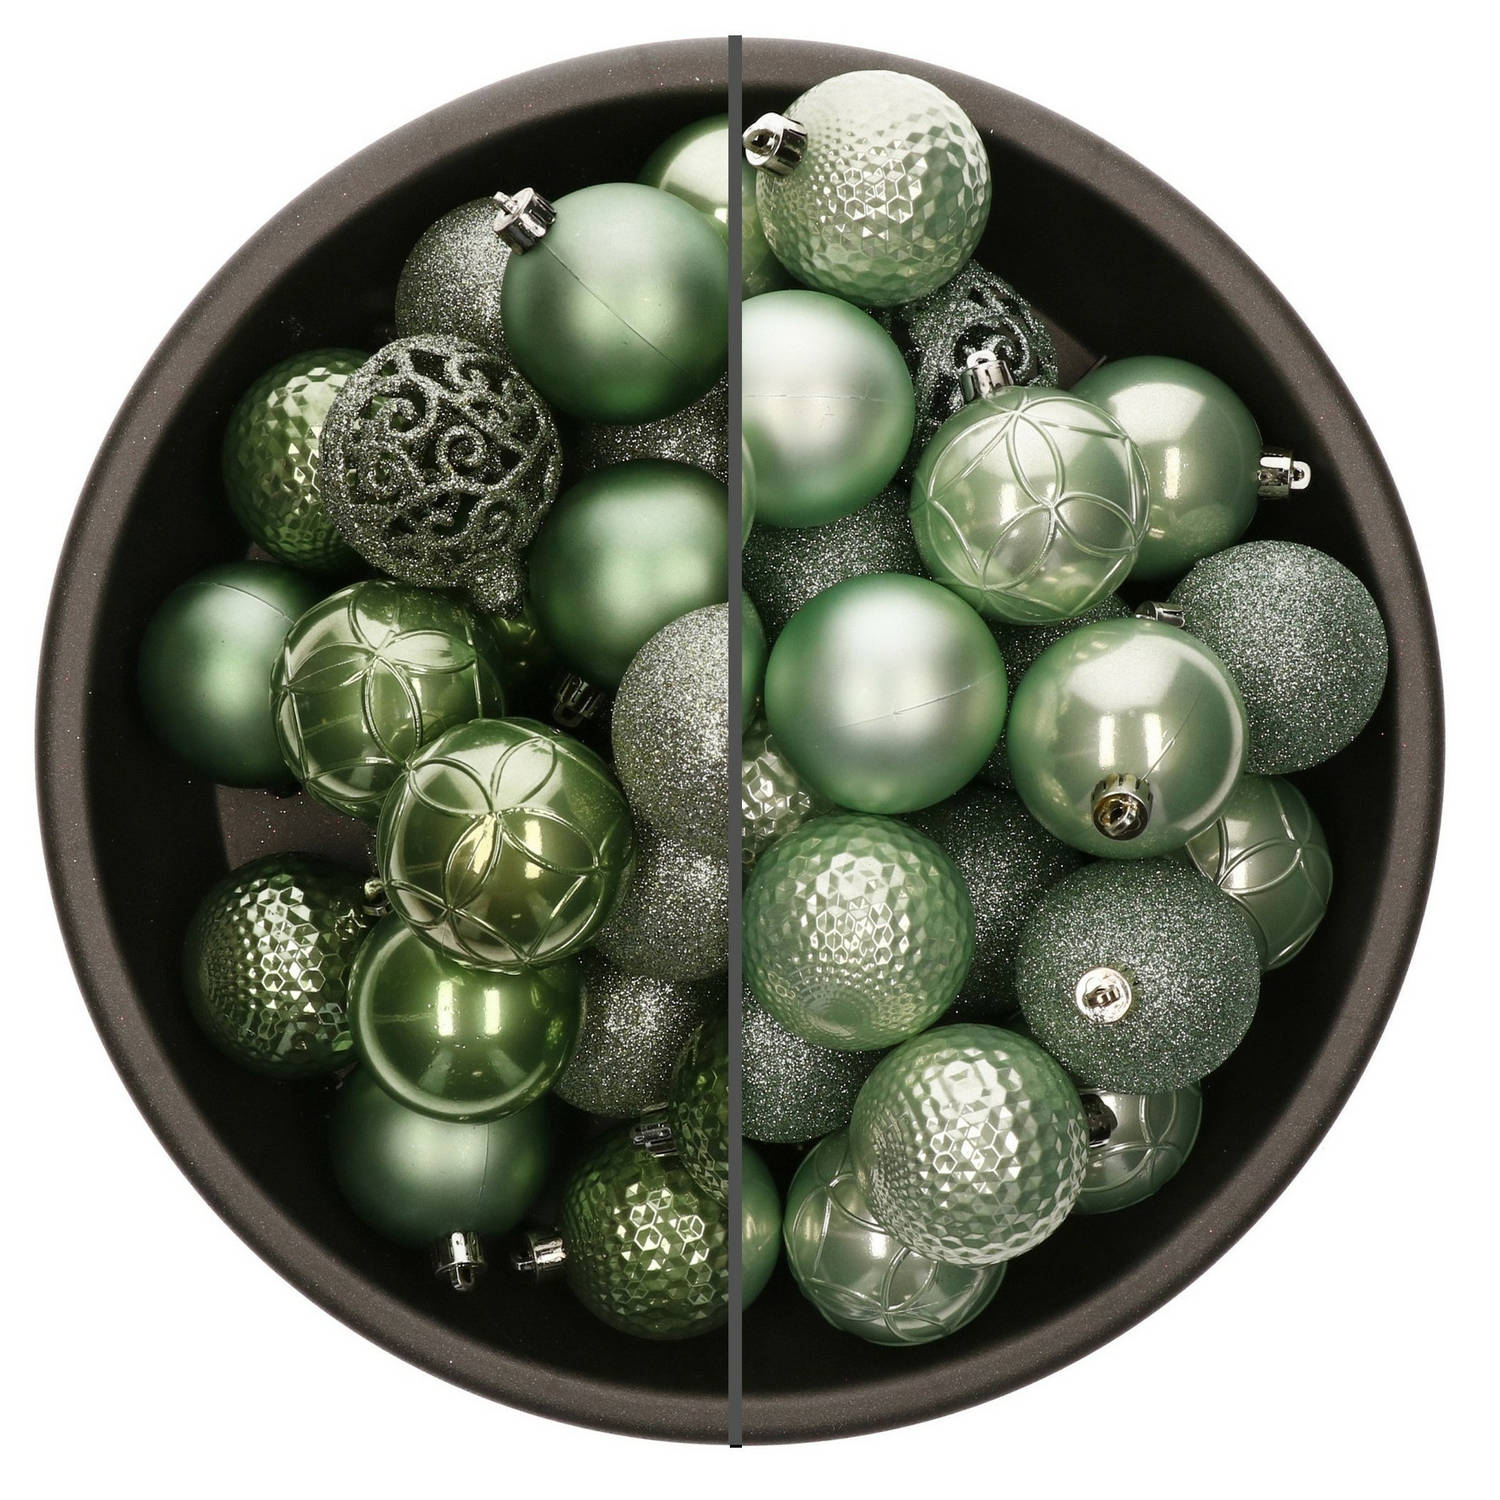 74x stuks kunststof kerstballen mix van salie groen en mintgroen 6 cm - Kerstbal